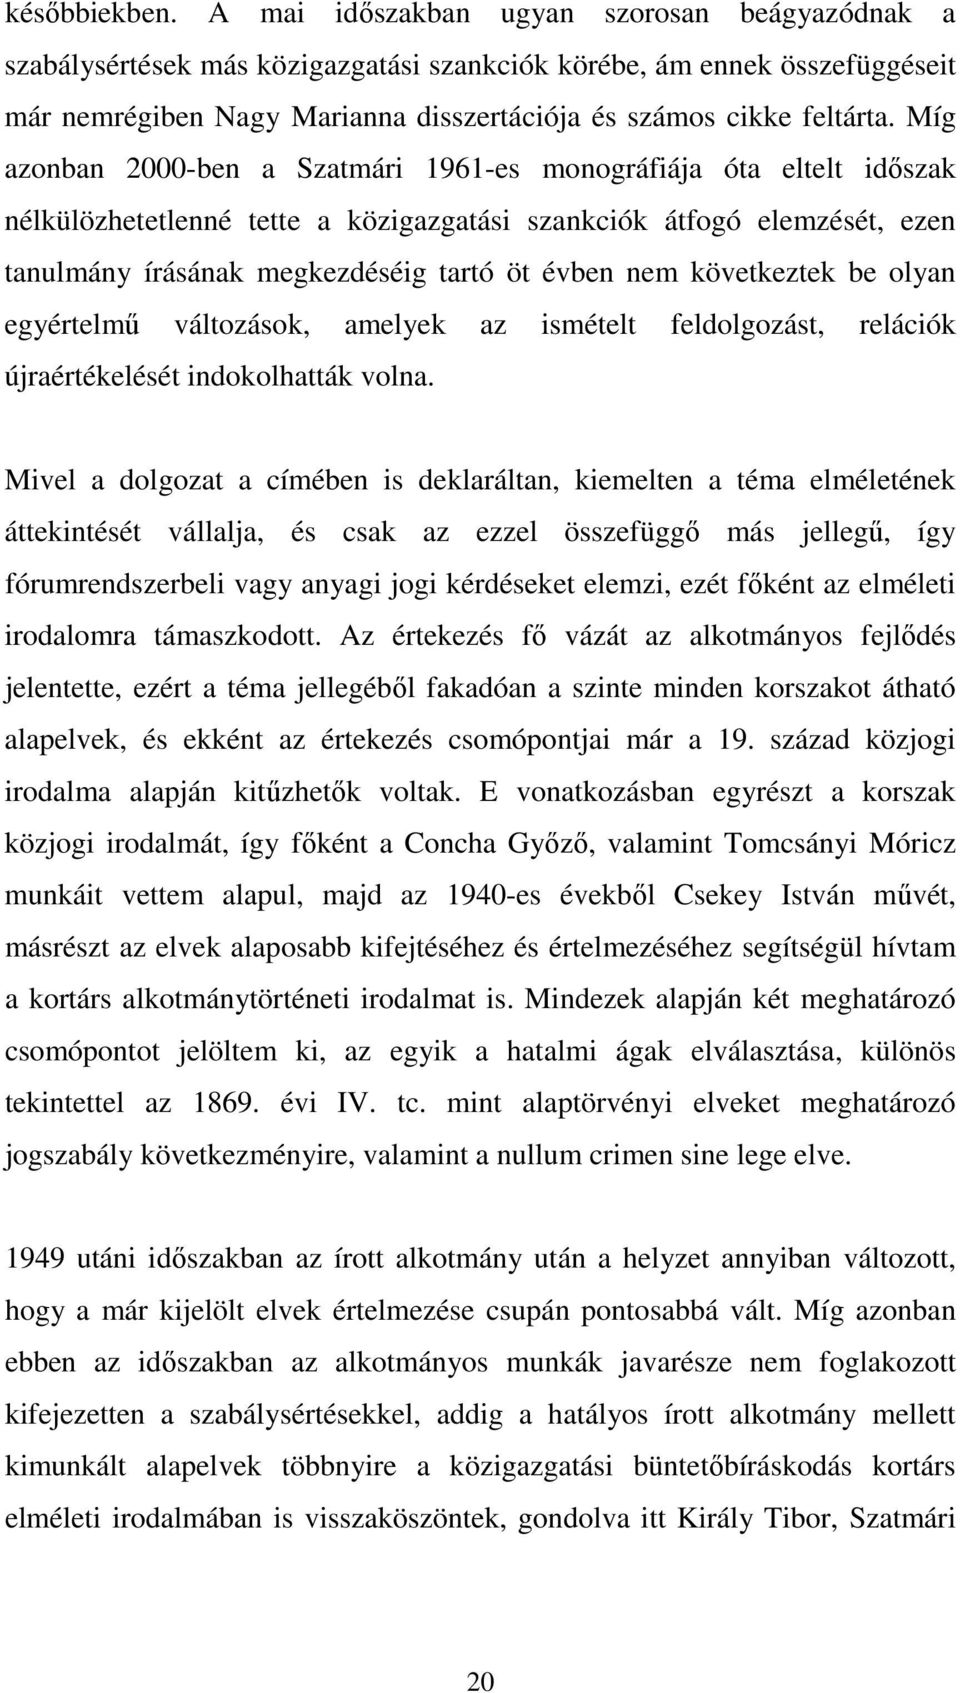 Míg azonban 2000-ben a Szatmári 1961-es monográfiája óta eltelt idıszak nélkülözhetetlenné tette a közigazgatási szankciók átfogó elemzését, ezen tanulmány írásának megkezdéséig tartó öt évben nem